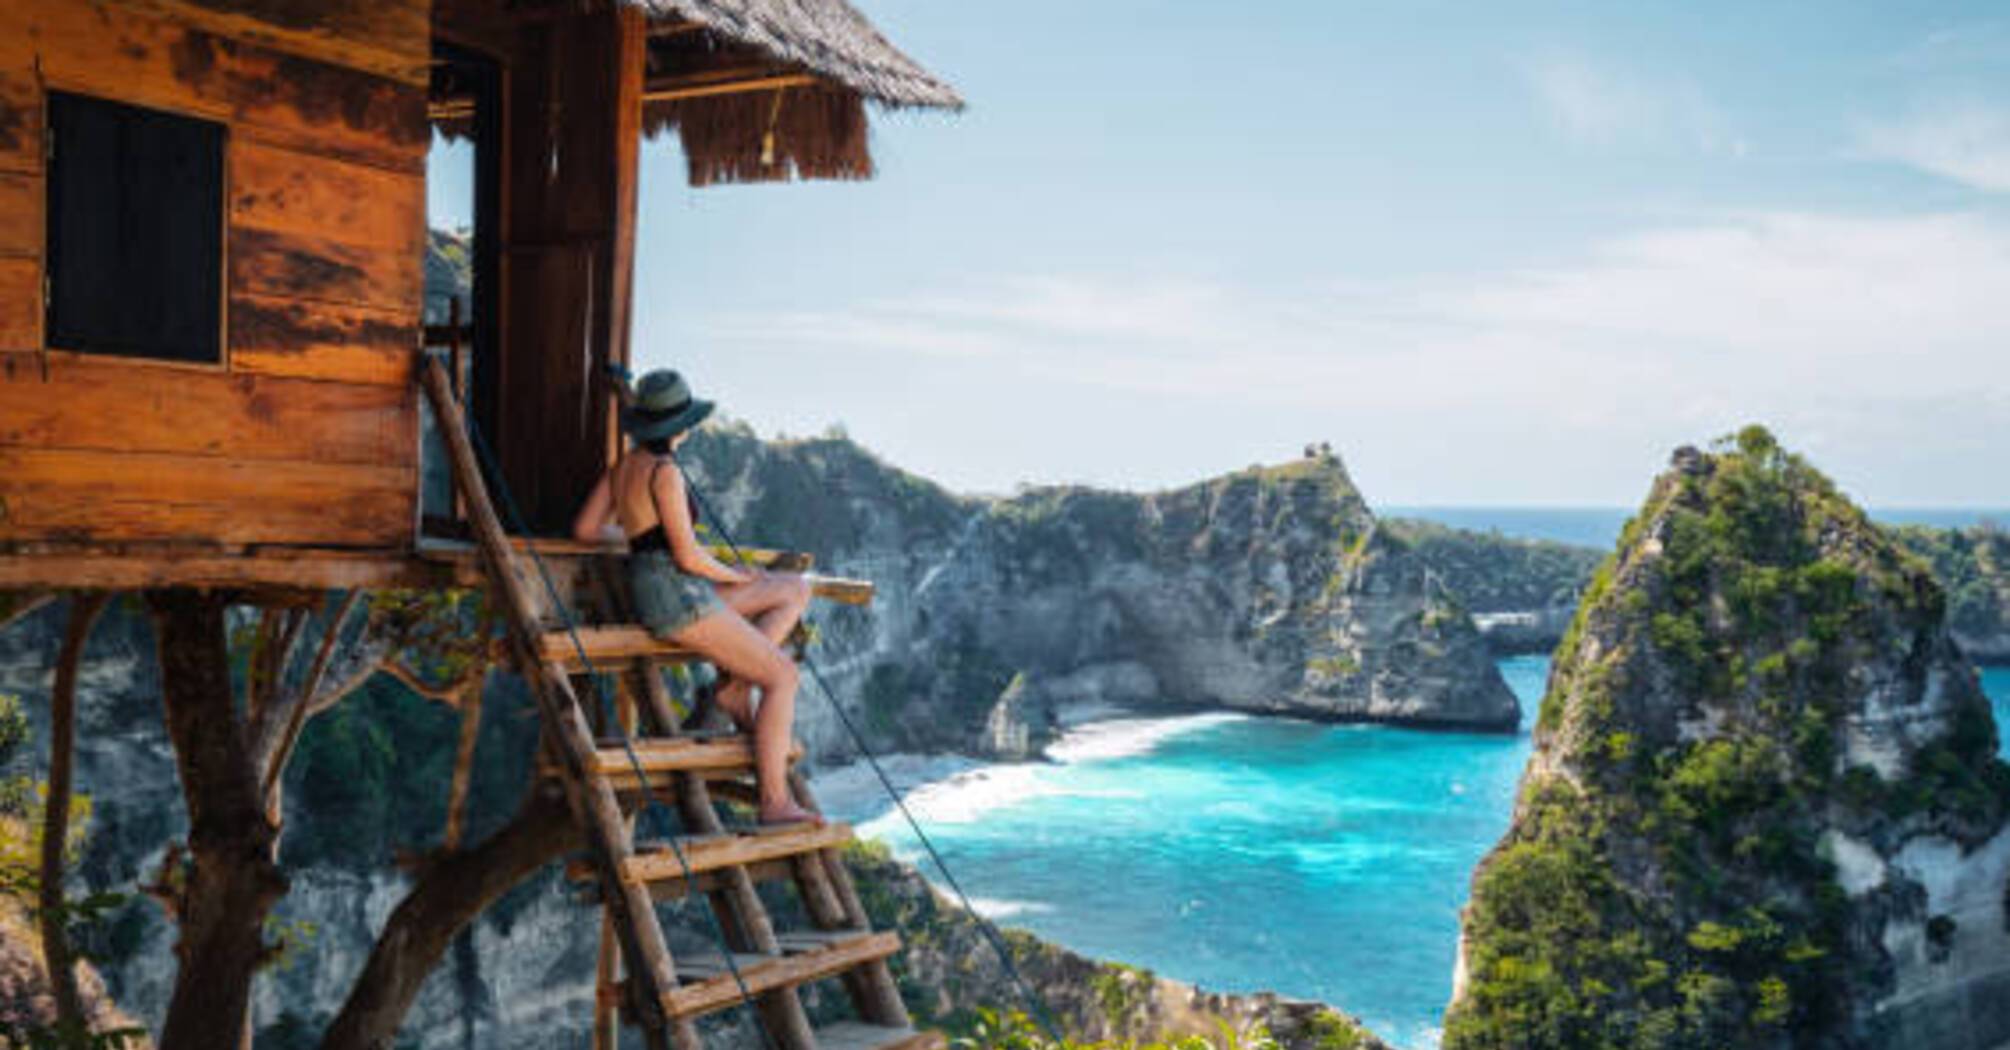 Доминика или Бали: какая страна лучше подойдет для туристов